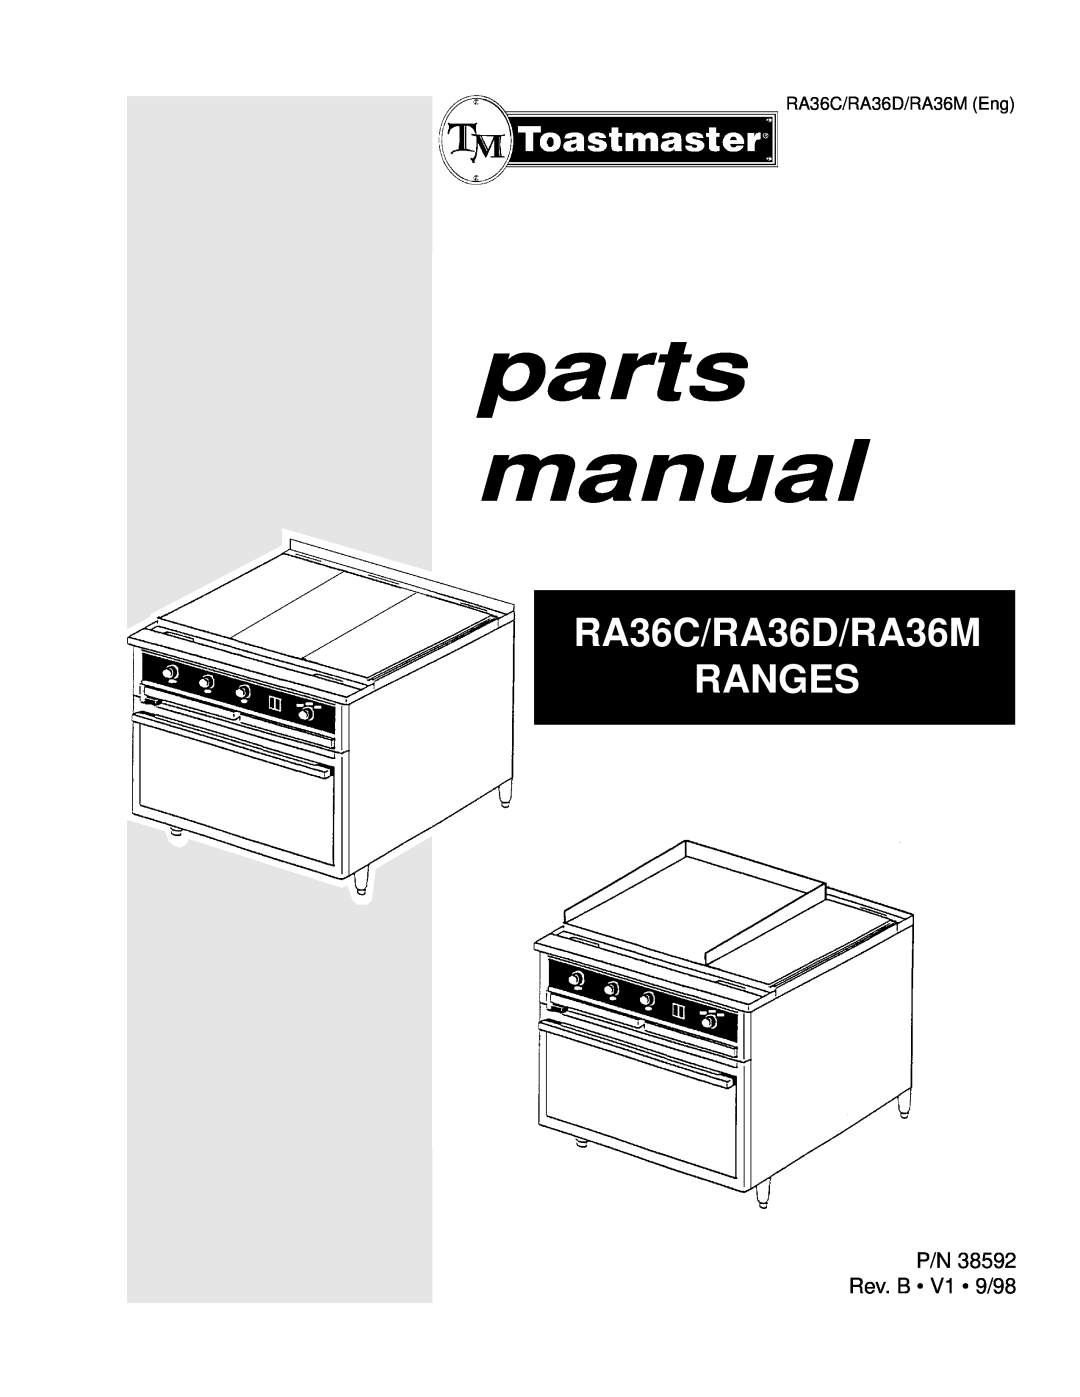 Toastmaster manual P/N Rev. B V1 9/98, parts manual, RA36C/RA36D/RA36M RANGES 